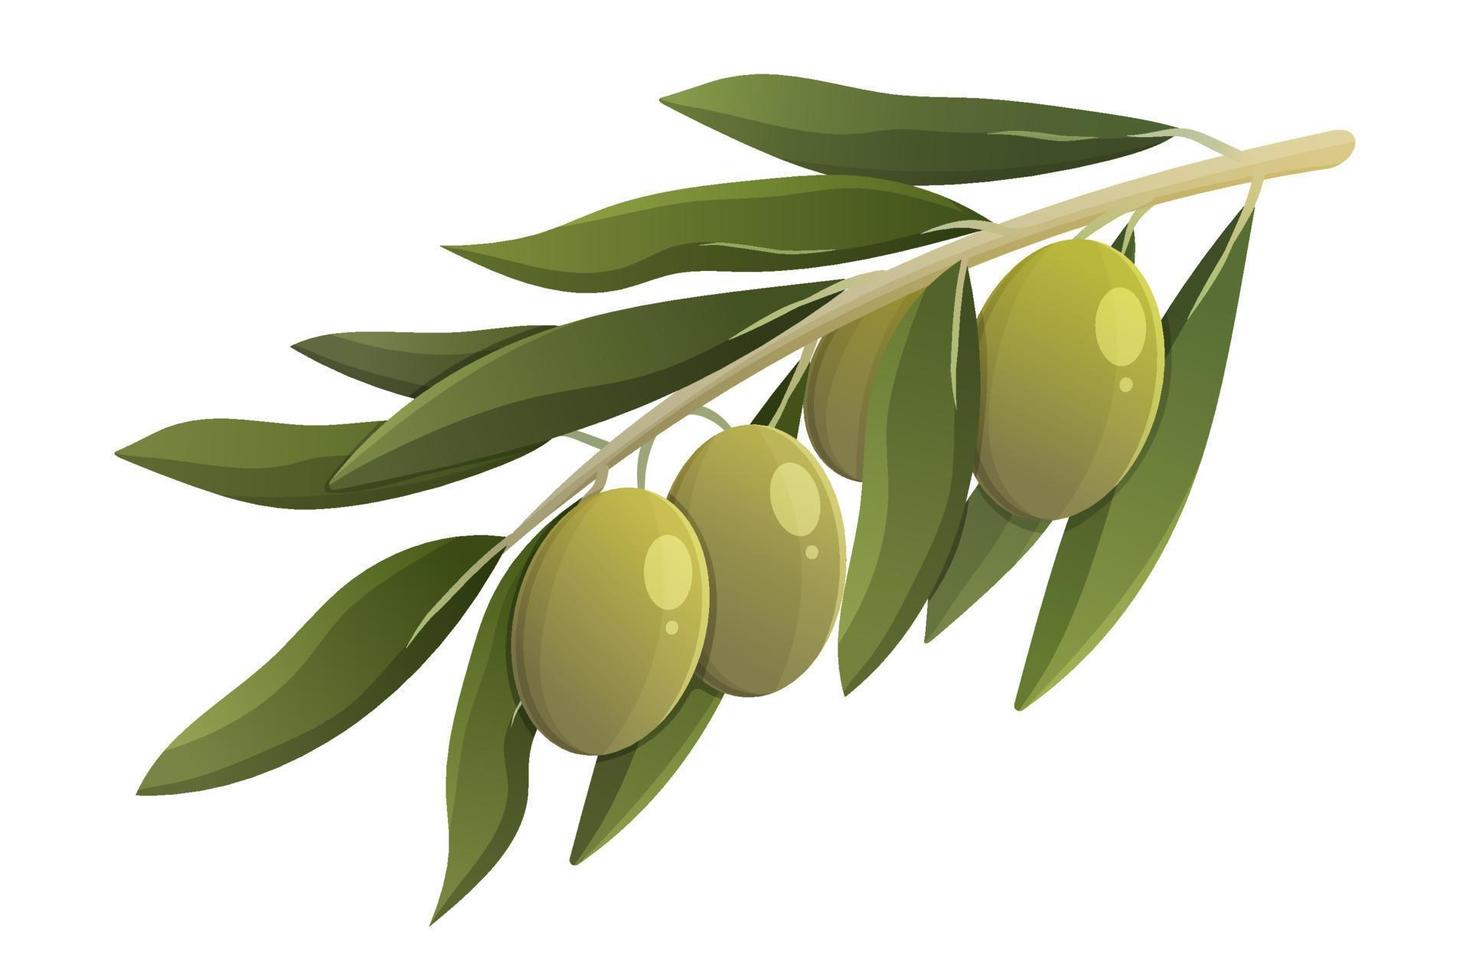 rama de olivo con hojas verdes. ilustración aislada de vector de dibujos animados